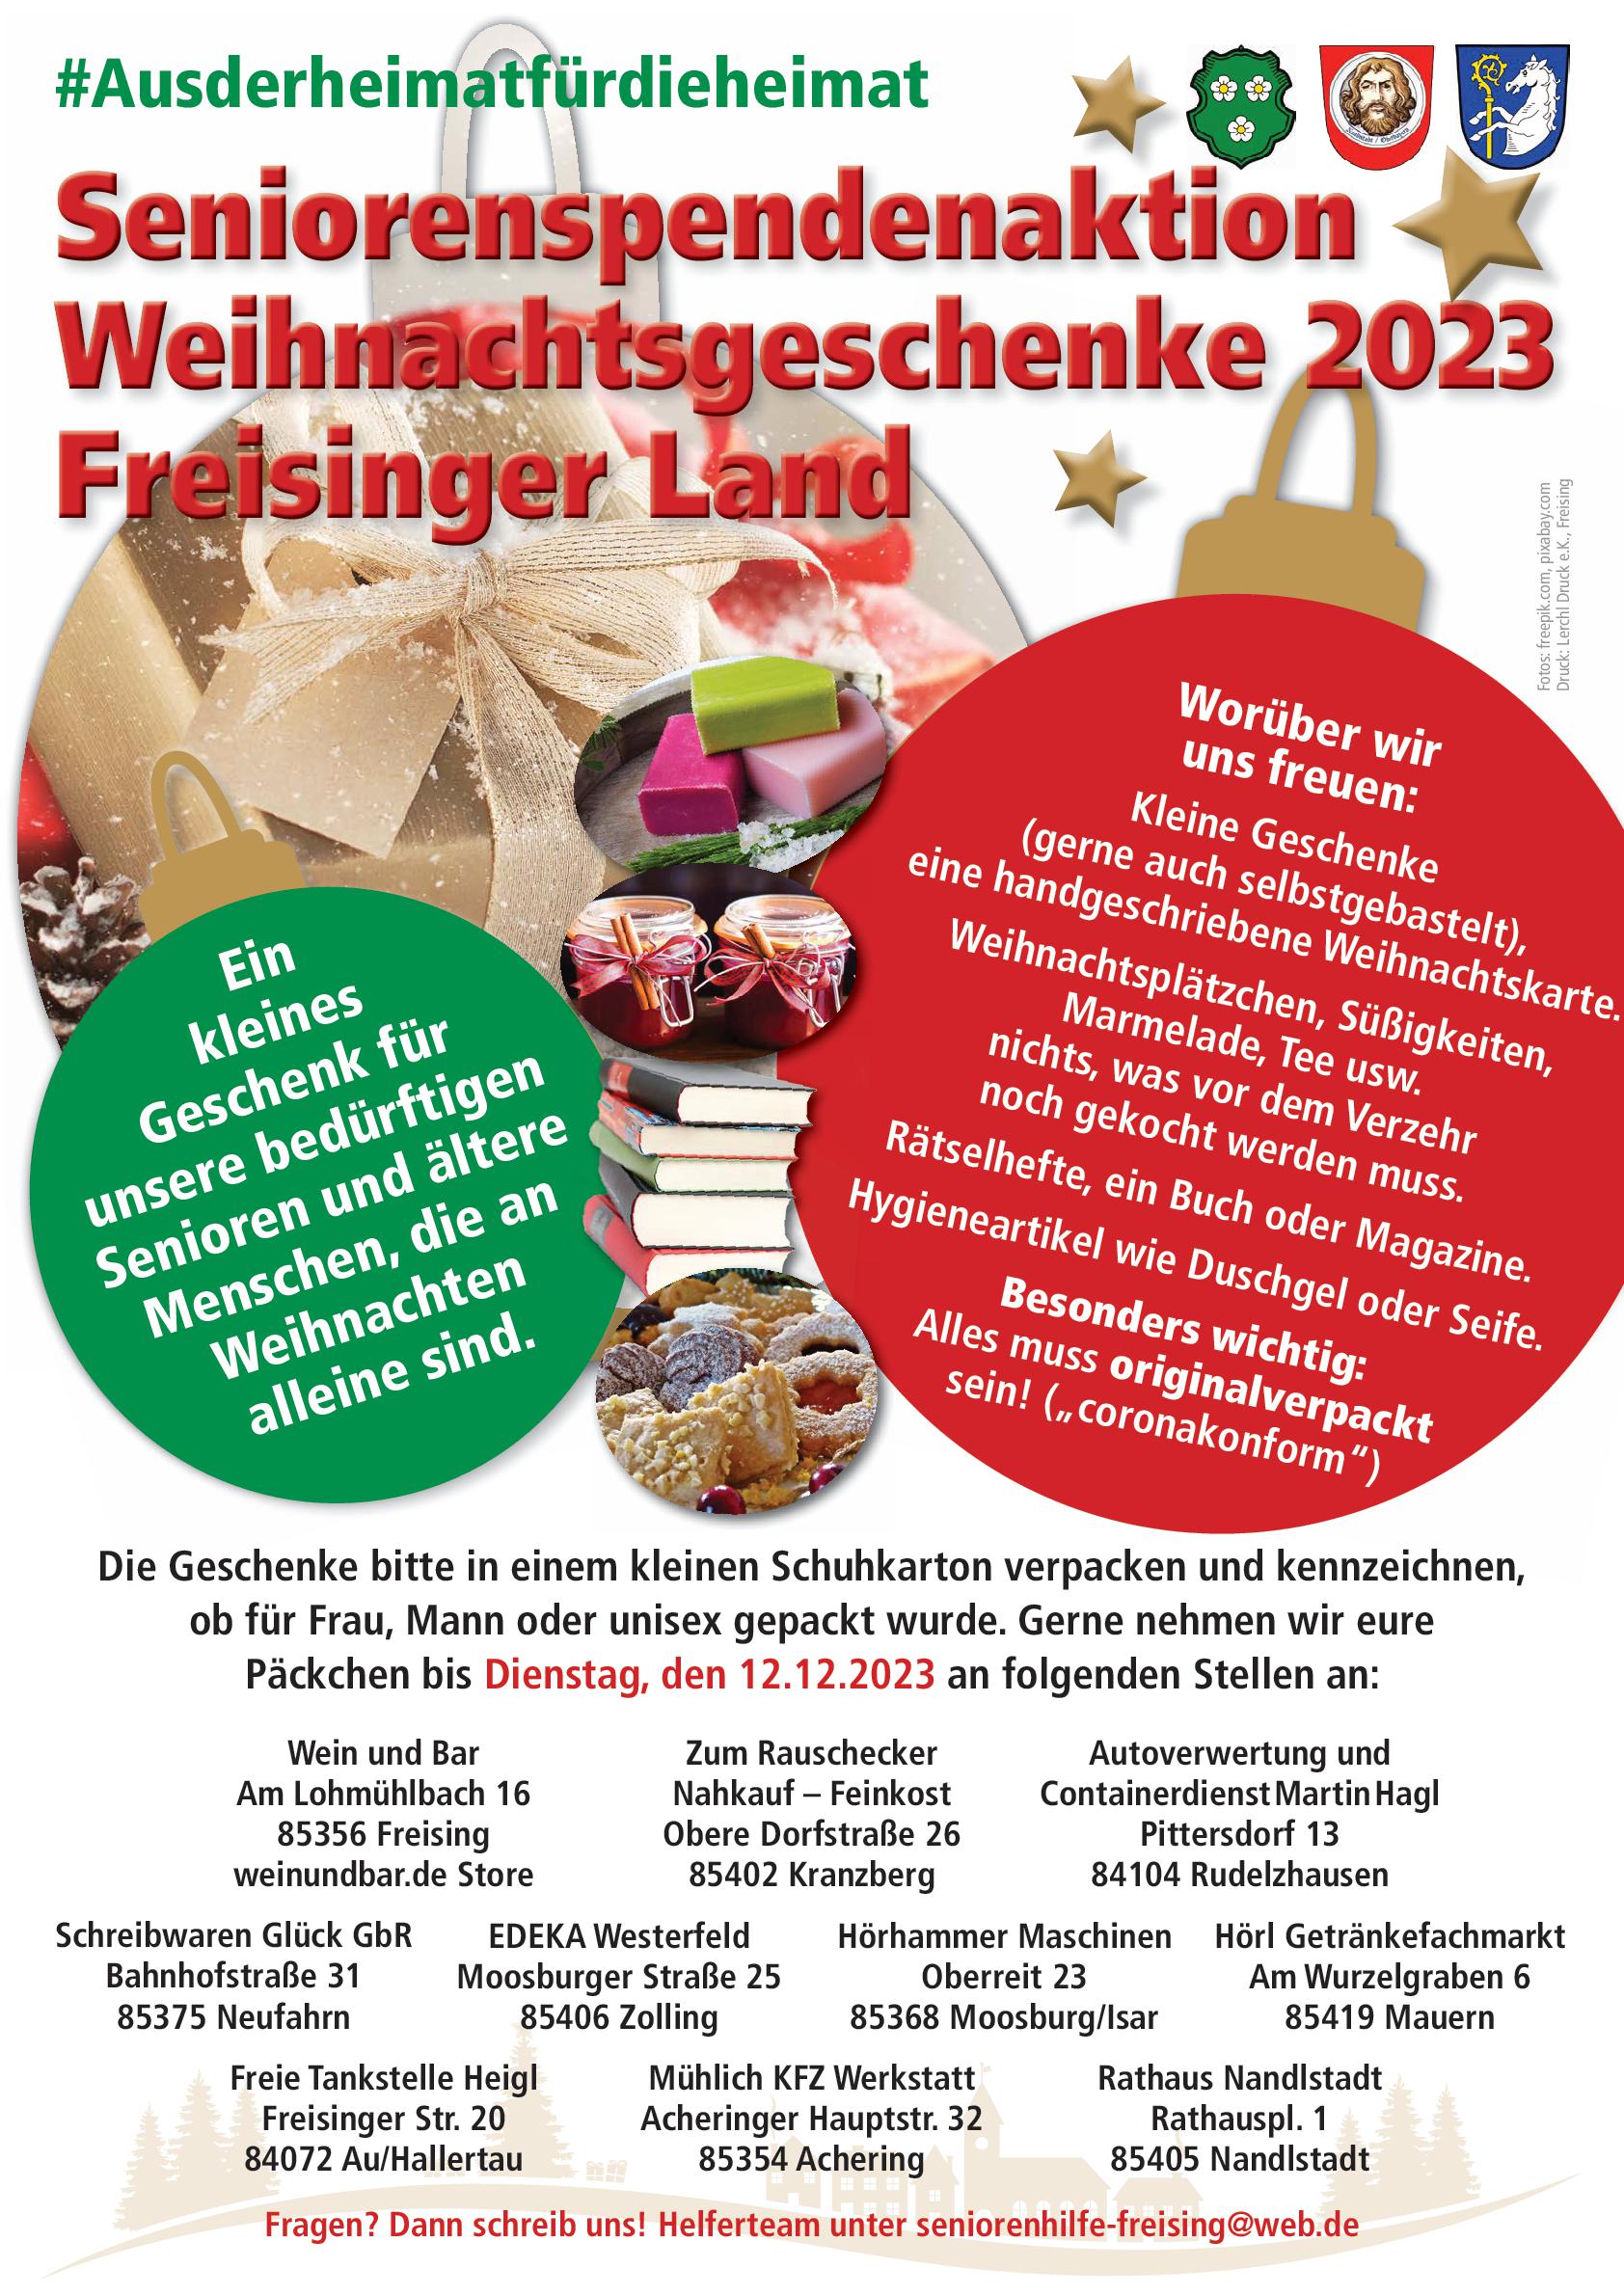 Seniorenspendenaktion Weihnachtsgeschenke 2023 Freisinger Land